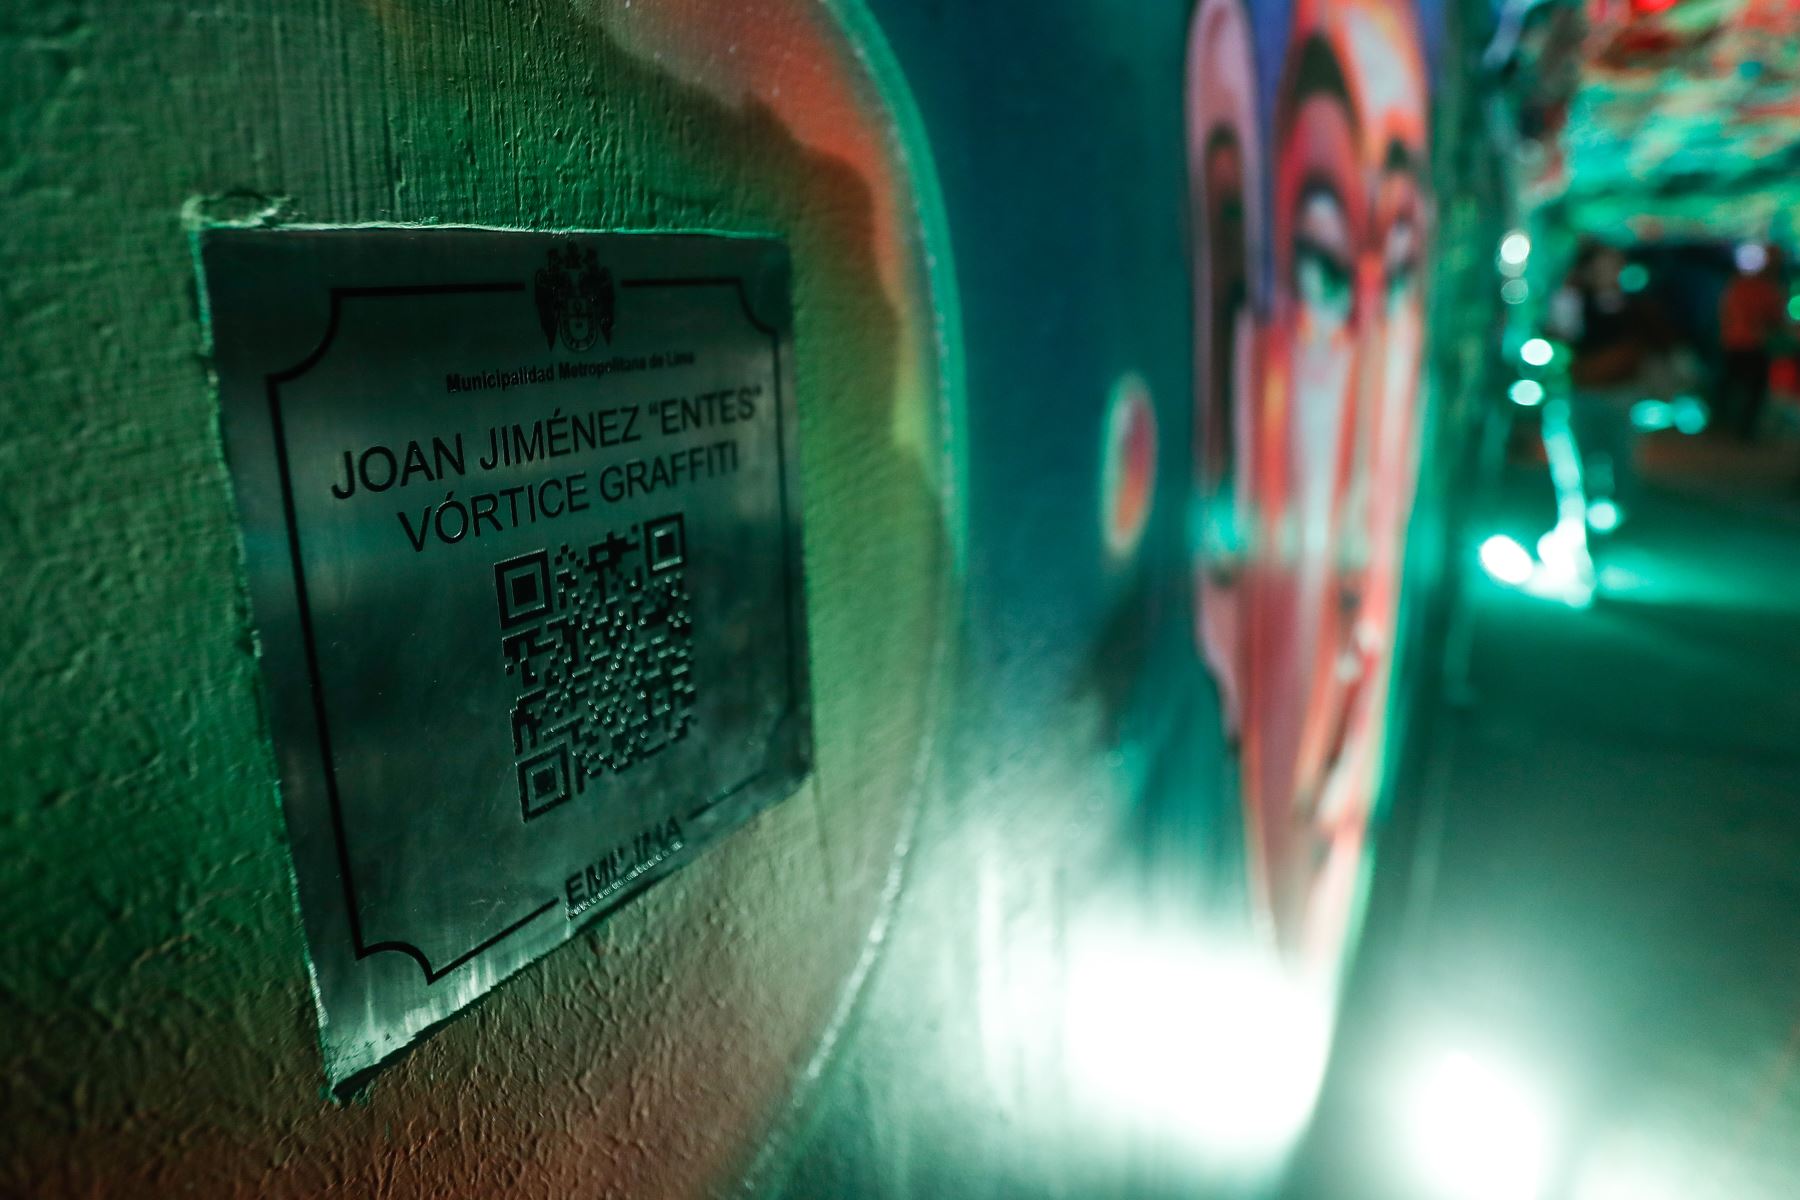 Con el propósito de incorporar obras de arte, la Municipalidad de Lima inauguró la obra titulada “Vórtice Grafitti” del artista peruano Joan Jiménez, más conocido como "Entes", en el Circuito Mágico del Agua. La exposición es permamente. Foto: ANDINA/Renato Pajuelo